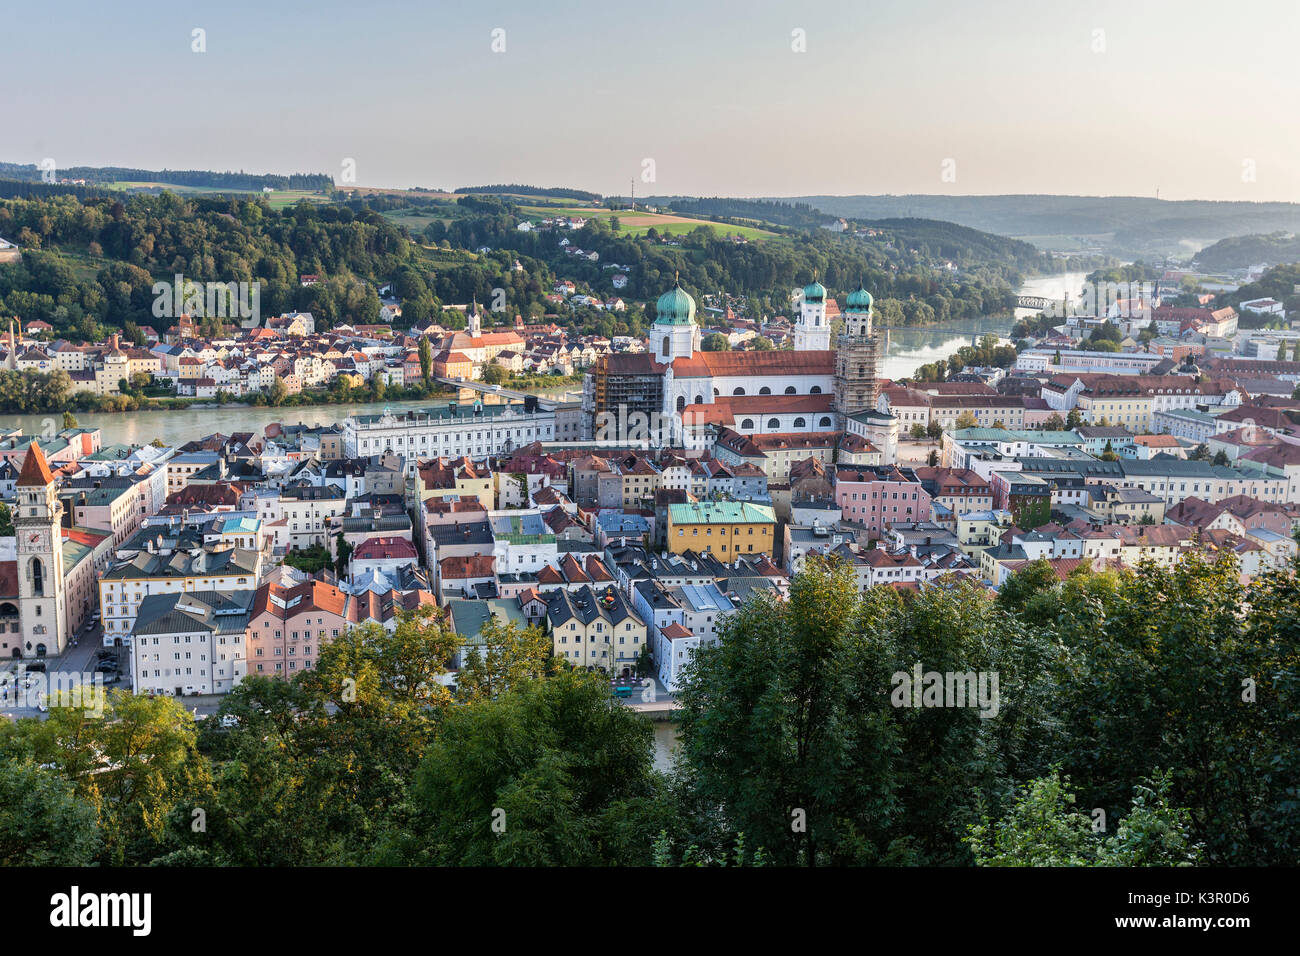 Vue de dessus les bâtiments typiques et maisons situé au milieu des collines verdoyantes et la rivière de la Basse Bavière Passau Allemagne Europe Banque D'Images